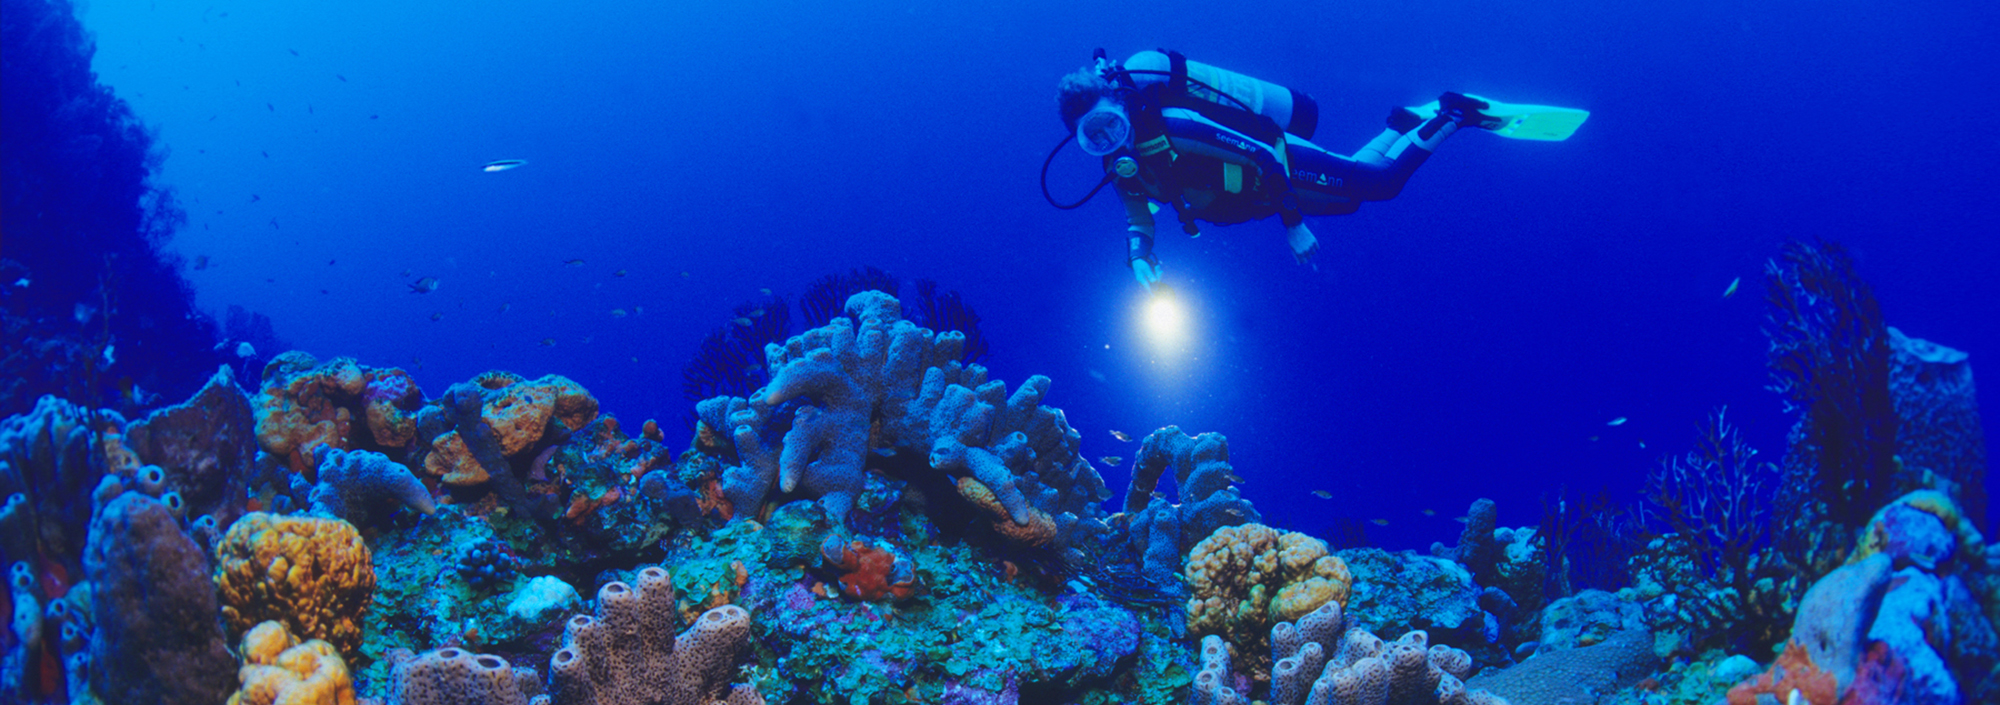 Taucher auf Saba mit bunten Korallen